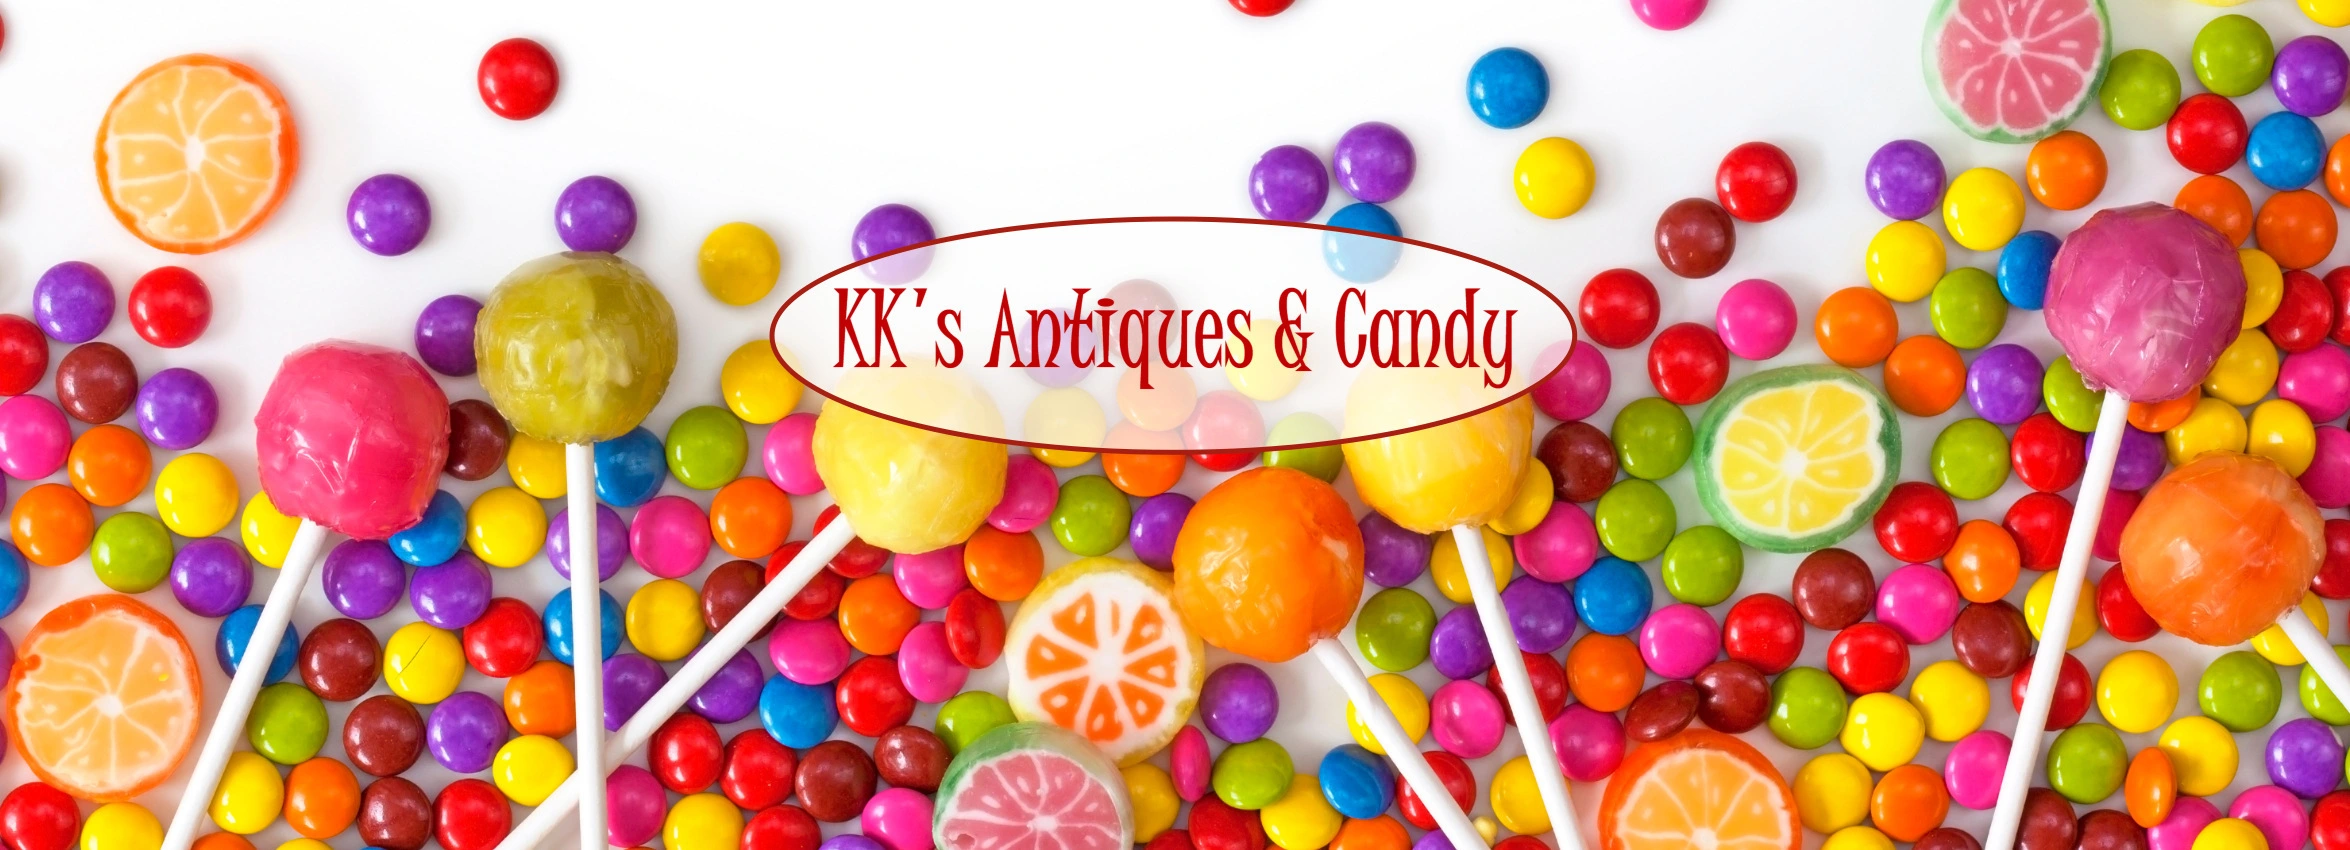 KKs-Antiques-Candy_Desktop_ET